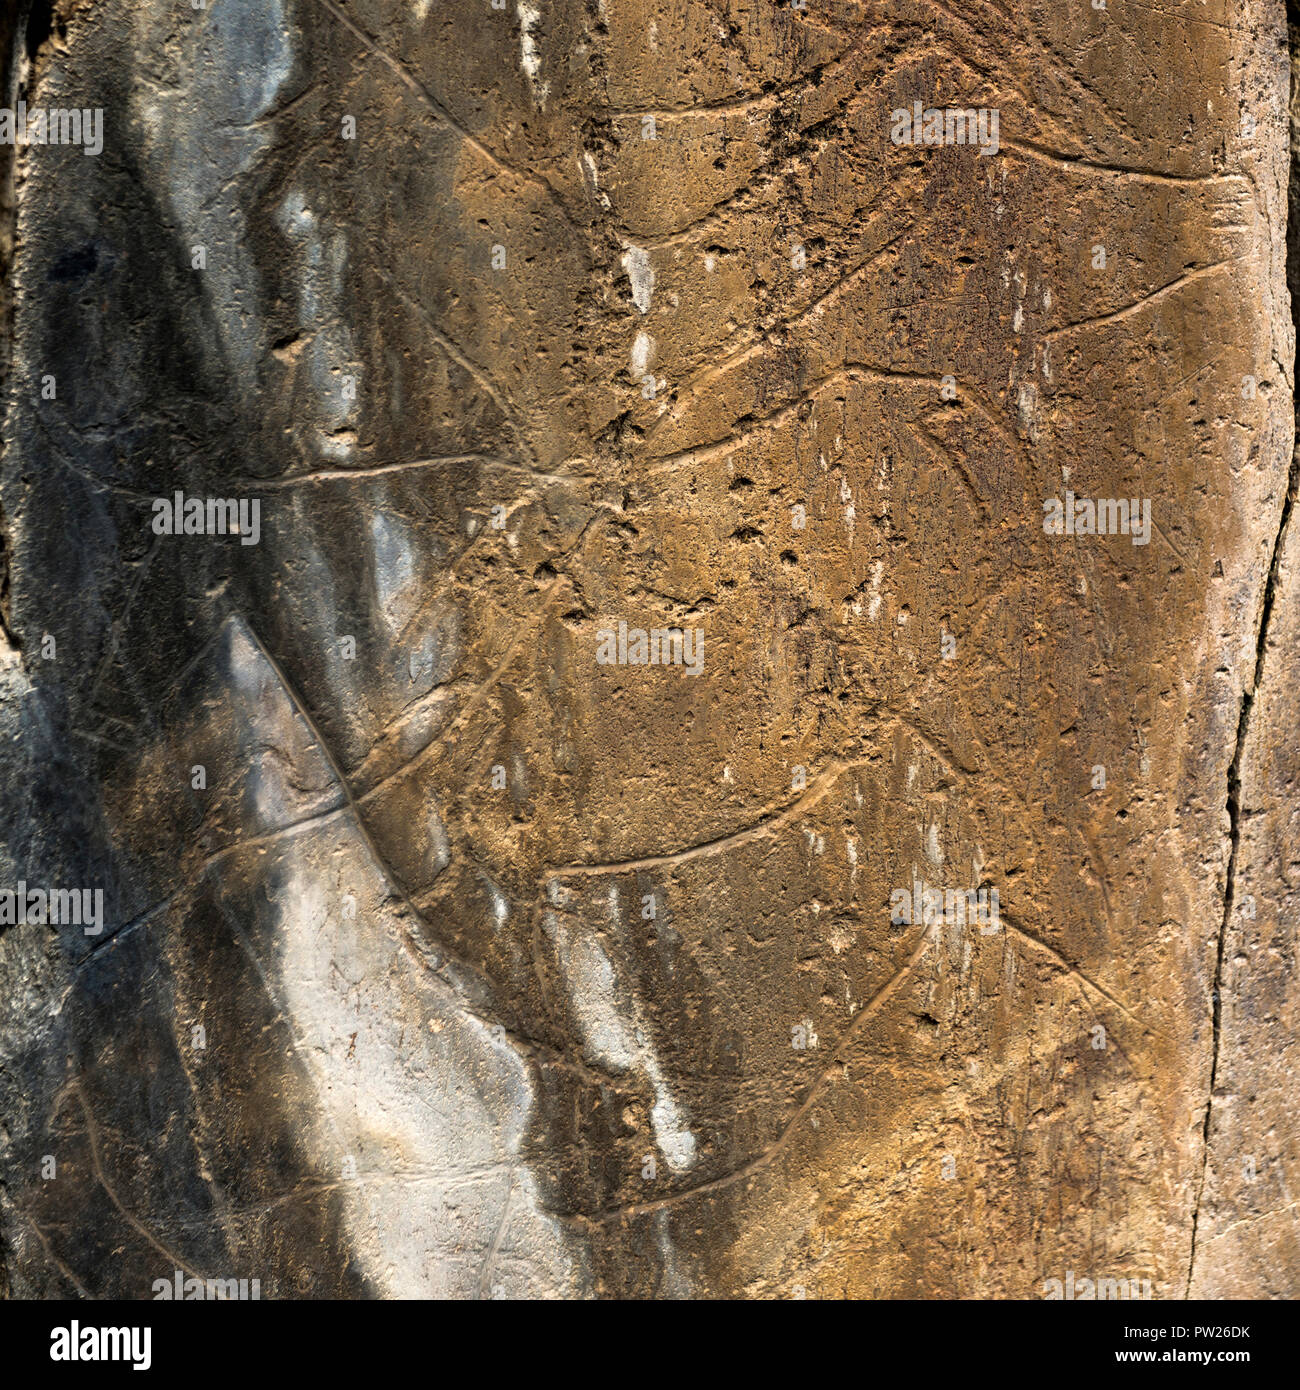 Le testimonianze preistoriche rupestri sito della valle del COA è un open air Paleolitico Superiore sito archeologico nel nord-est del Portogallo Foto Stock